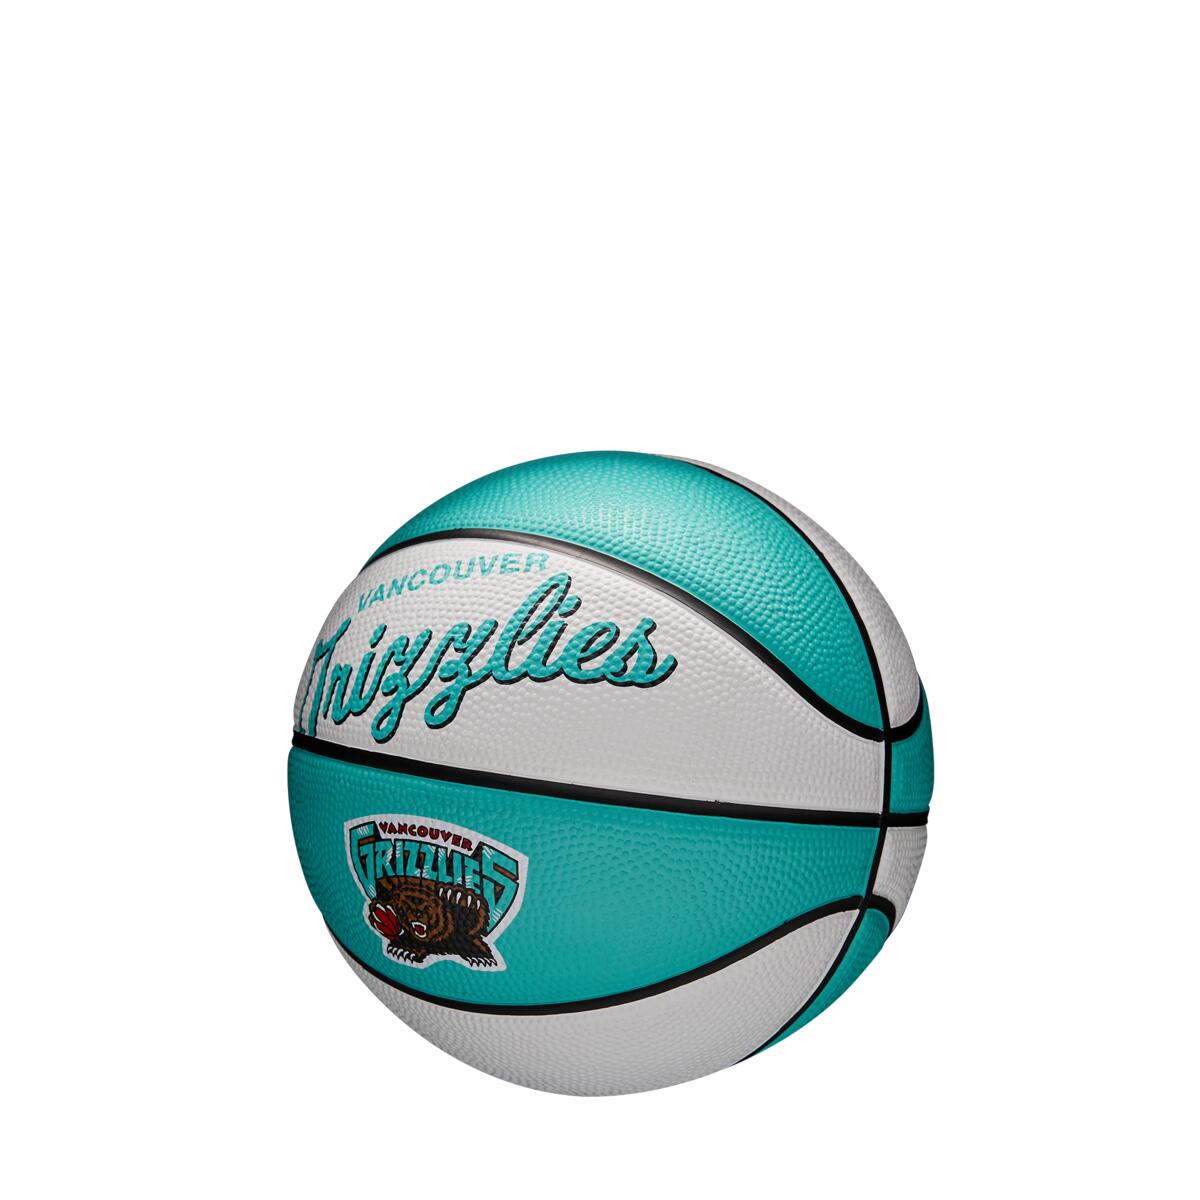 Ballons de basket NBA Retro Mini Vancouver Grizzlies